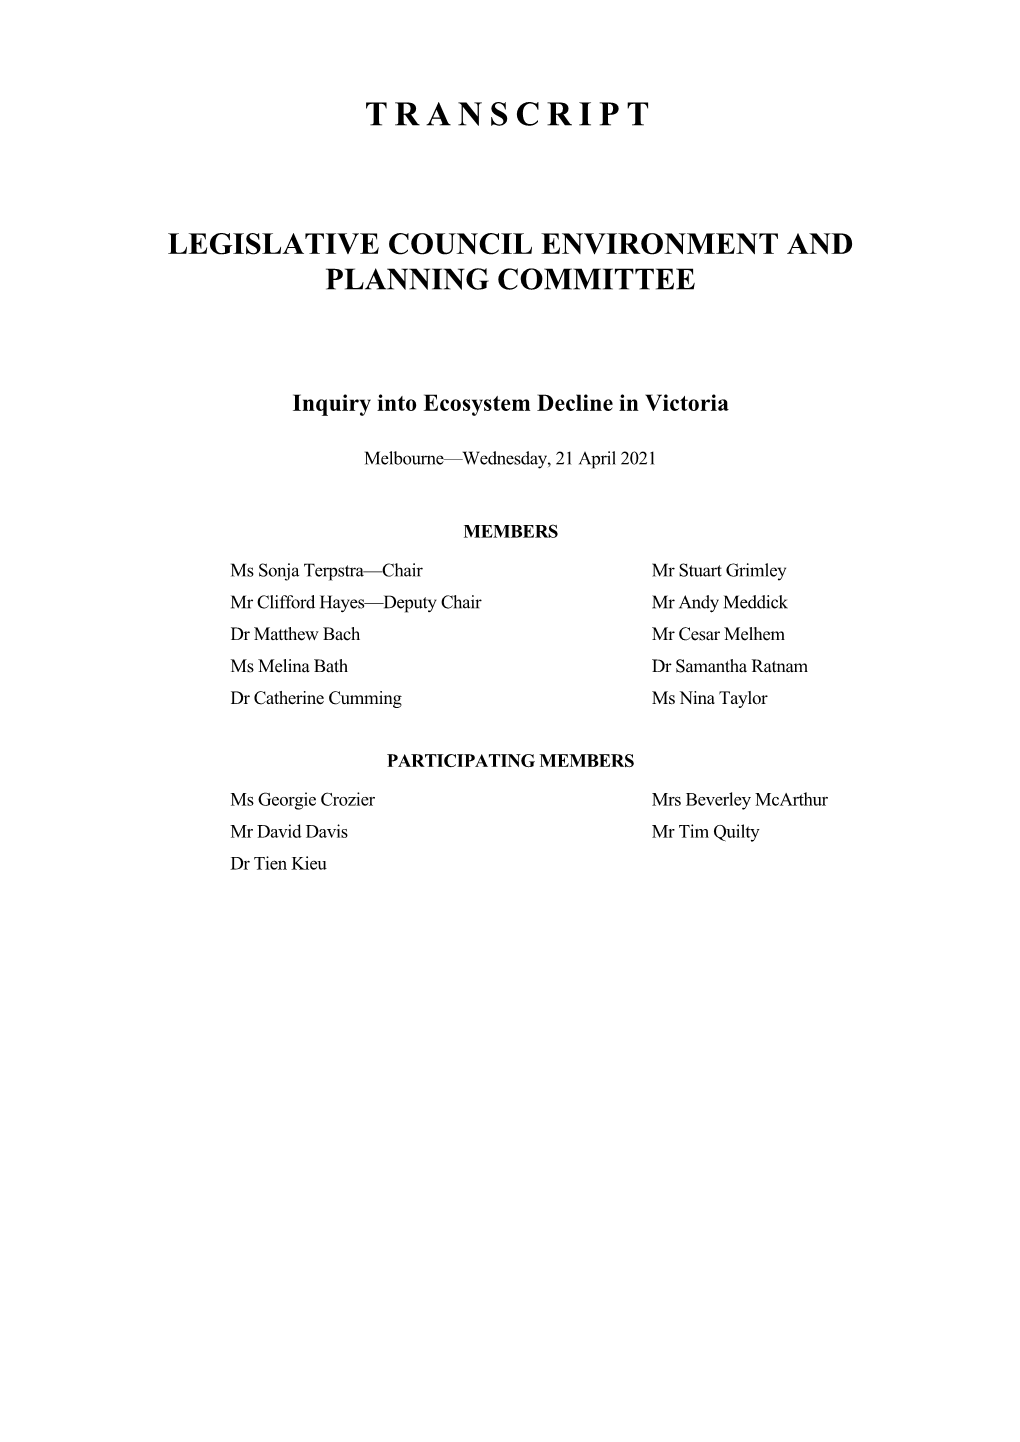 Transcript Legislative Council Environment